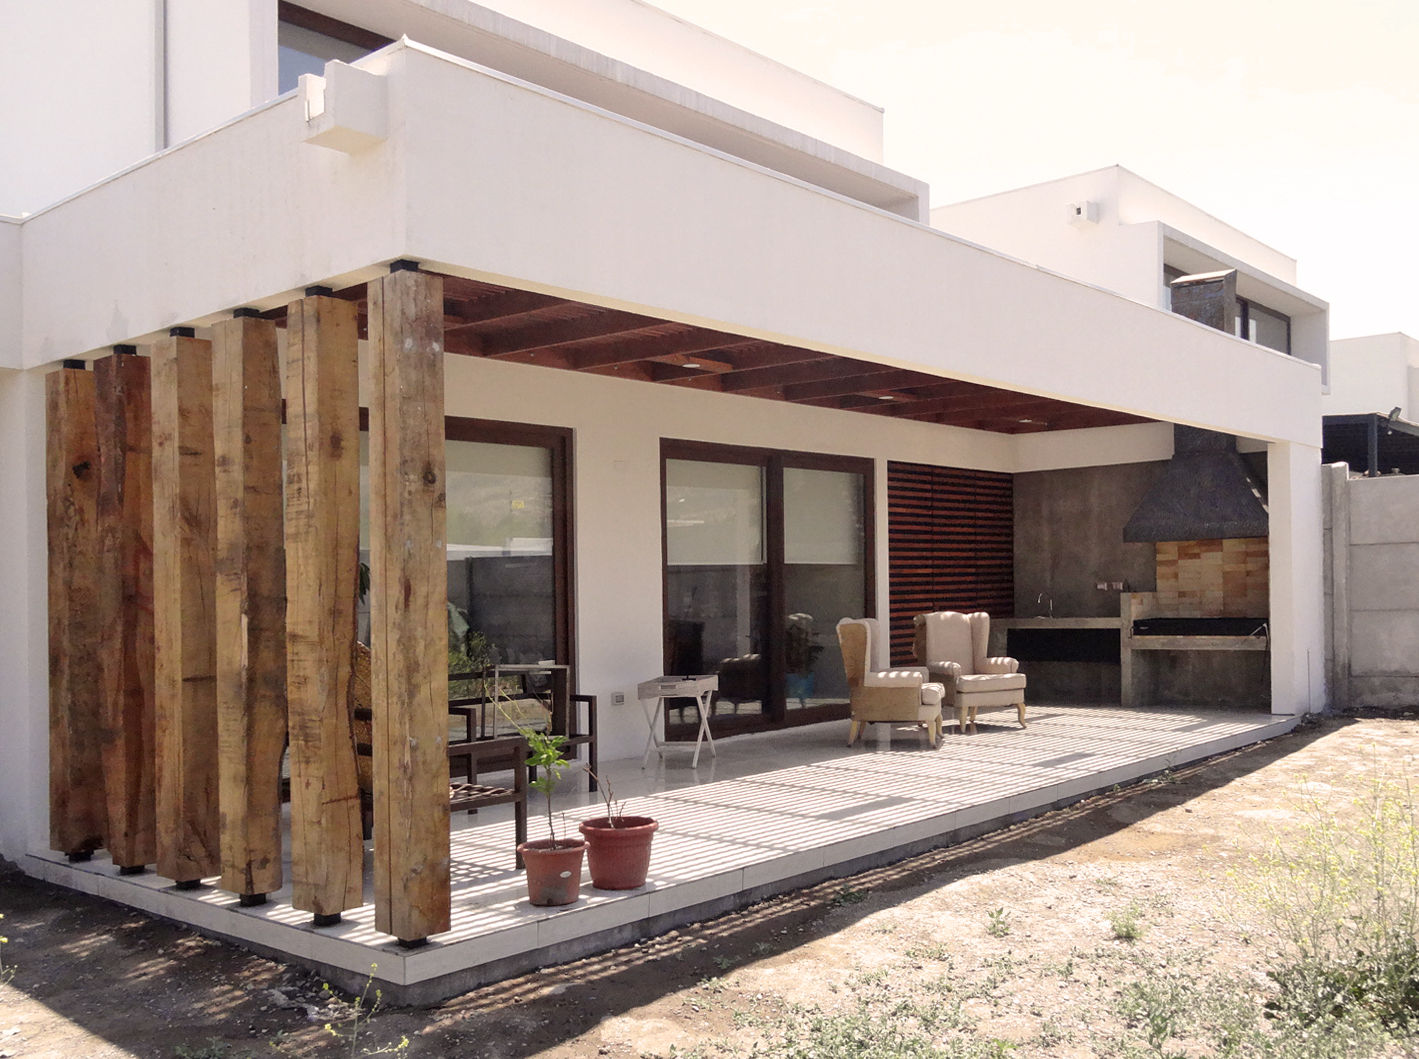 Quincho San Anselmo, 30m2, Chicureo, m2 estudio arquitectos - Santiago m2 estudio arquitectos - Santiago Flat roof